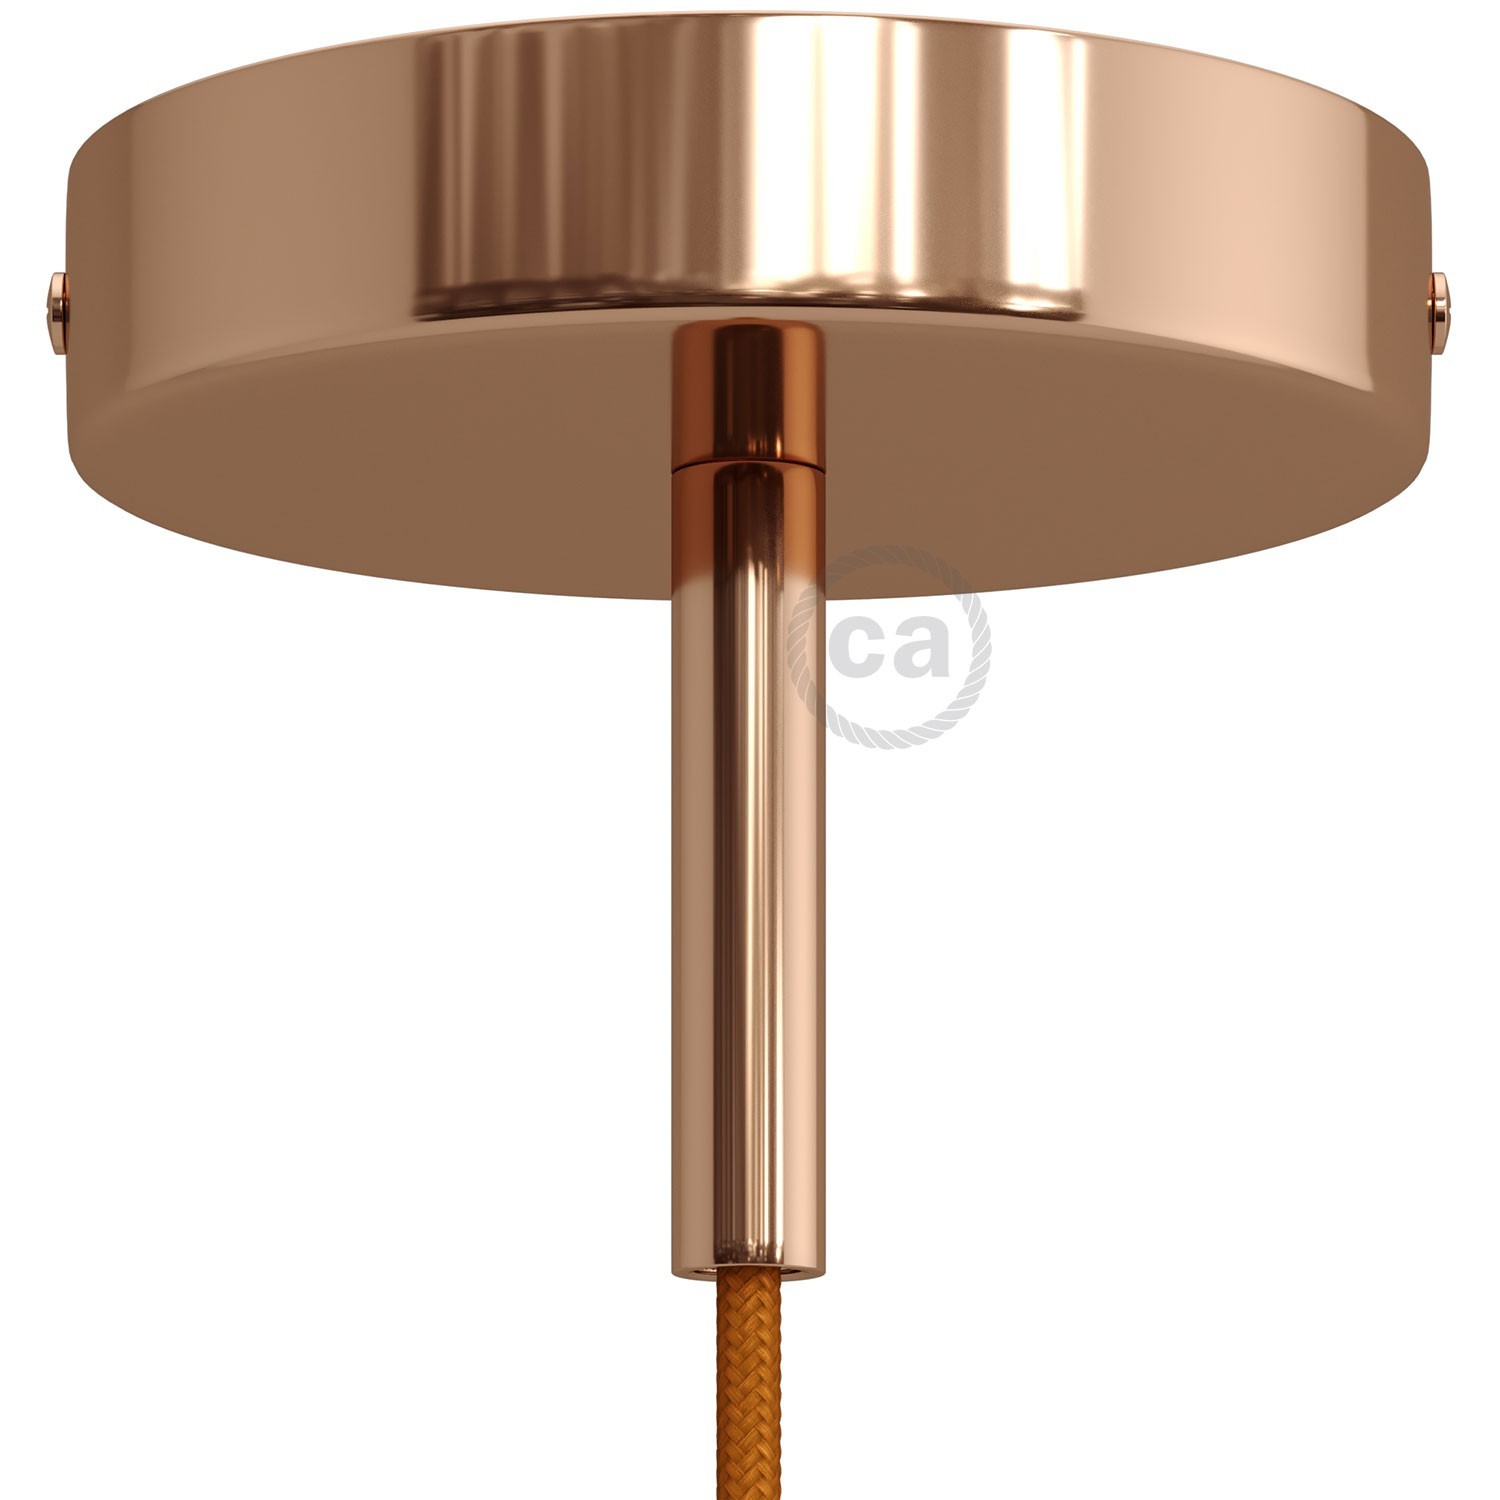 Kit rosone cilindrico in metallo con serracavo da 7 cm